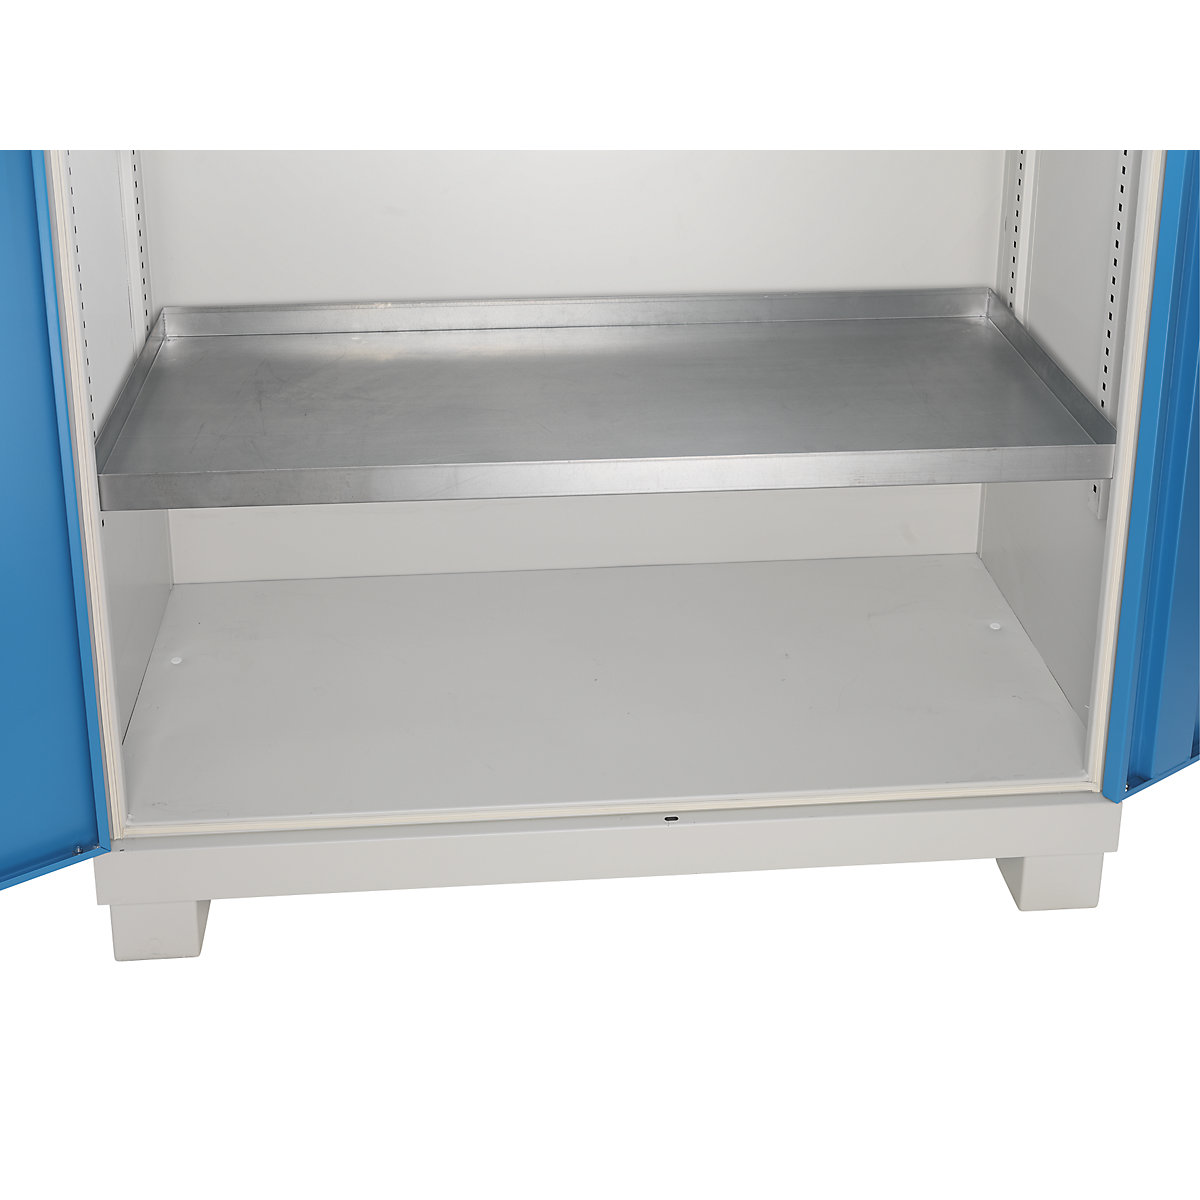 Tray shelf, zinc plated – eurokraft pro, HxWxD 48 x 1167 x 550 mm, max. load 80 kg